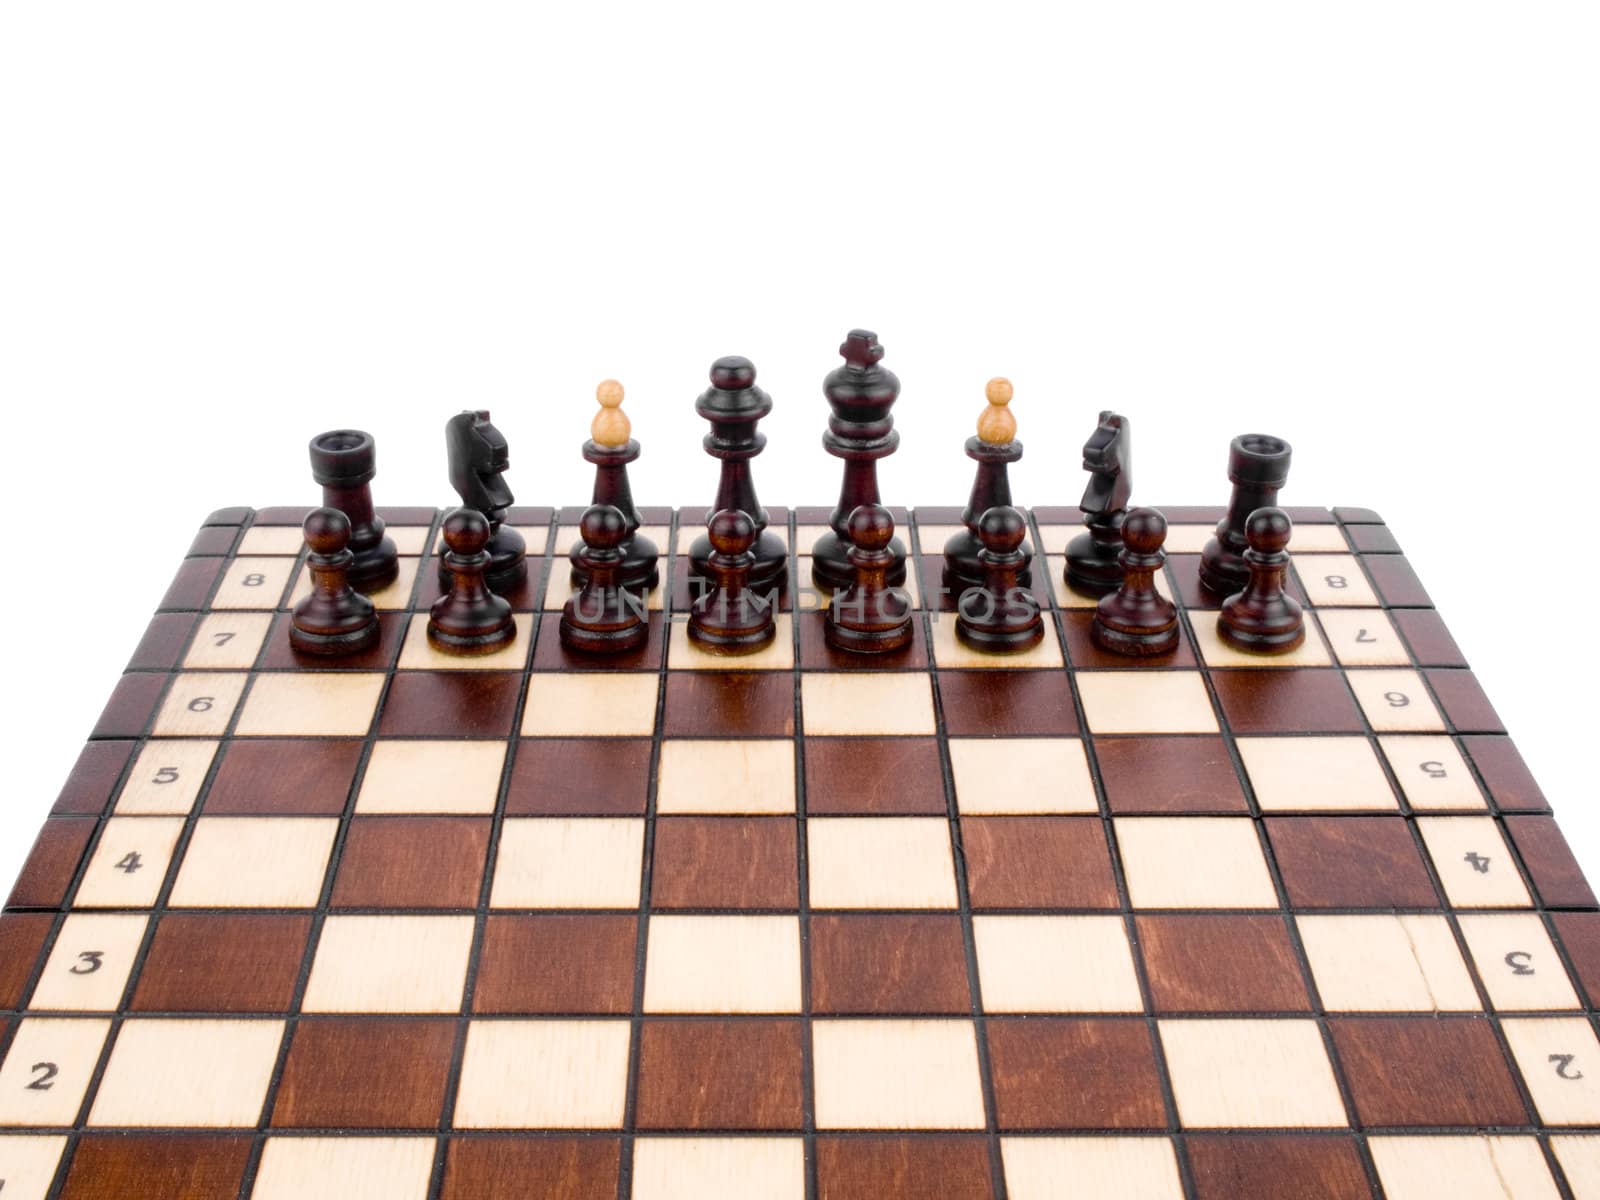 Black chess-men on wooden chessboard on white background